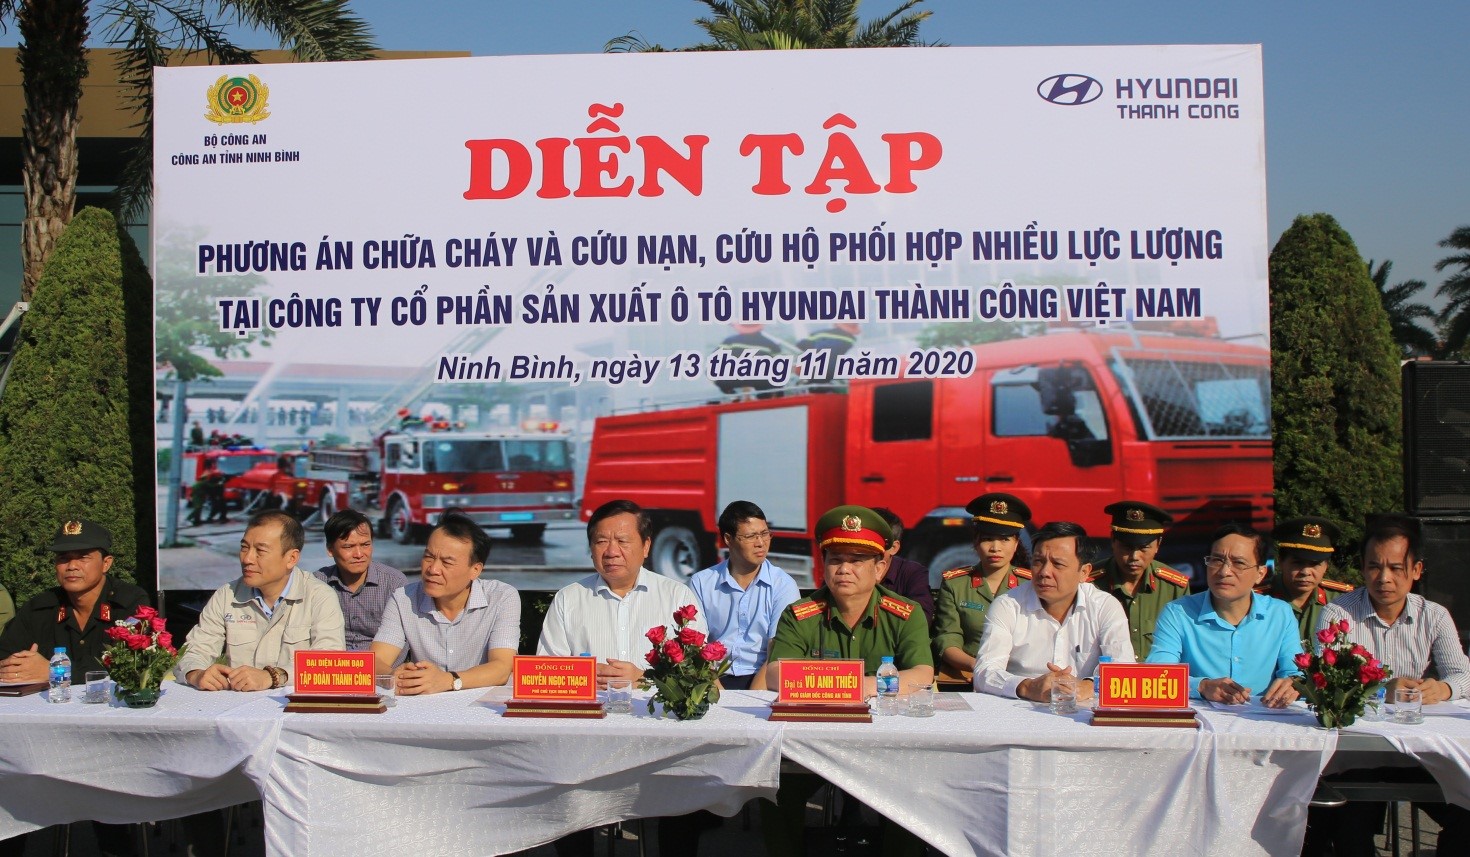 Ngày 13/11/2020, Công an tỉnh phối hợp với Công ty cổ phần sản xuất ô tô Hyundai Thành Công Việt Nam tổ chức buổi diễn tập tình huống chữa cháy và cứu nạn cứu hộ phối hợp nhiều lực lượng tại Nhà máy sản xuất và lắp ráp ô tô Huyndai Thành Công Ninh Bình (KCN Gián Khẩu, Gia Viễn).